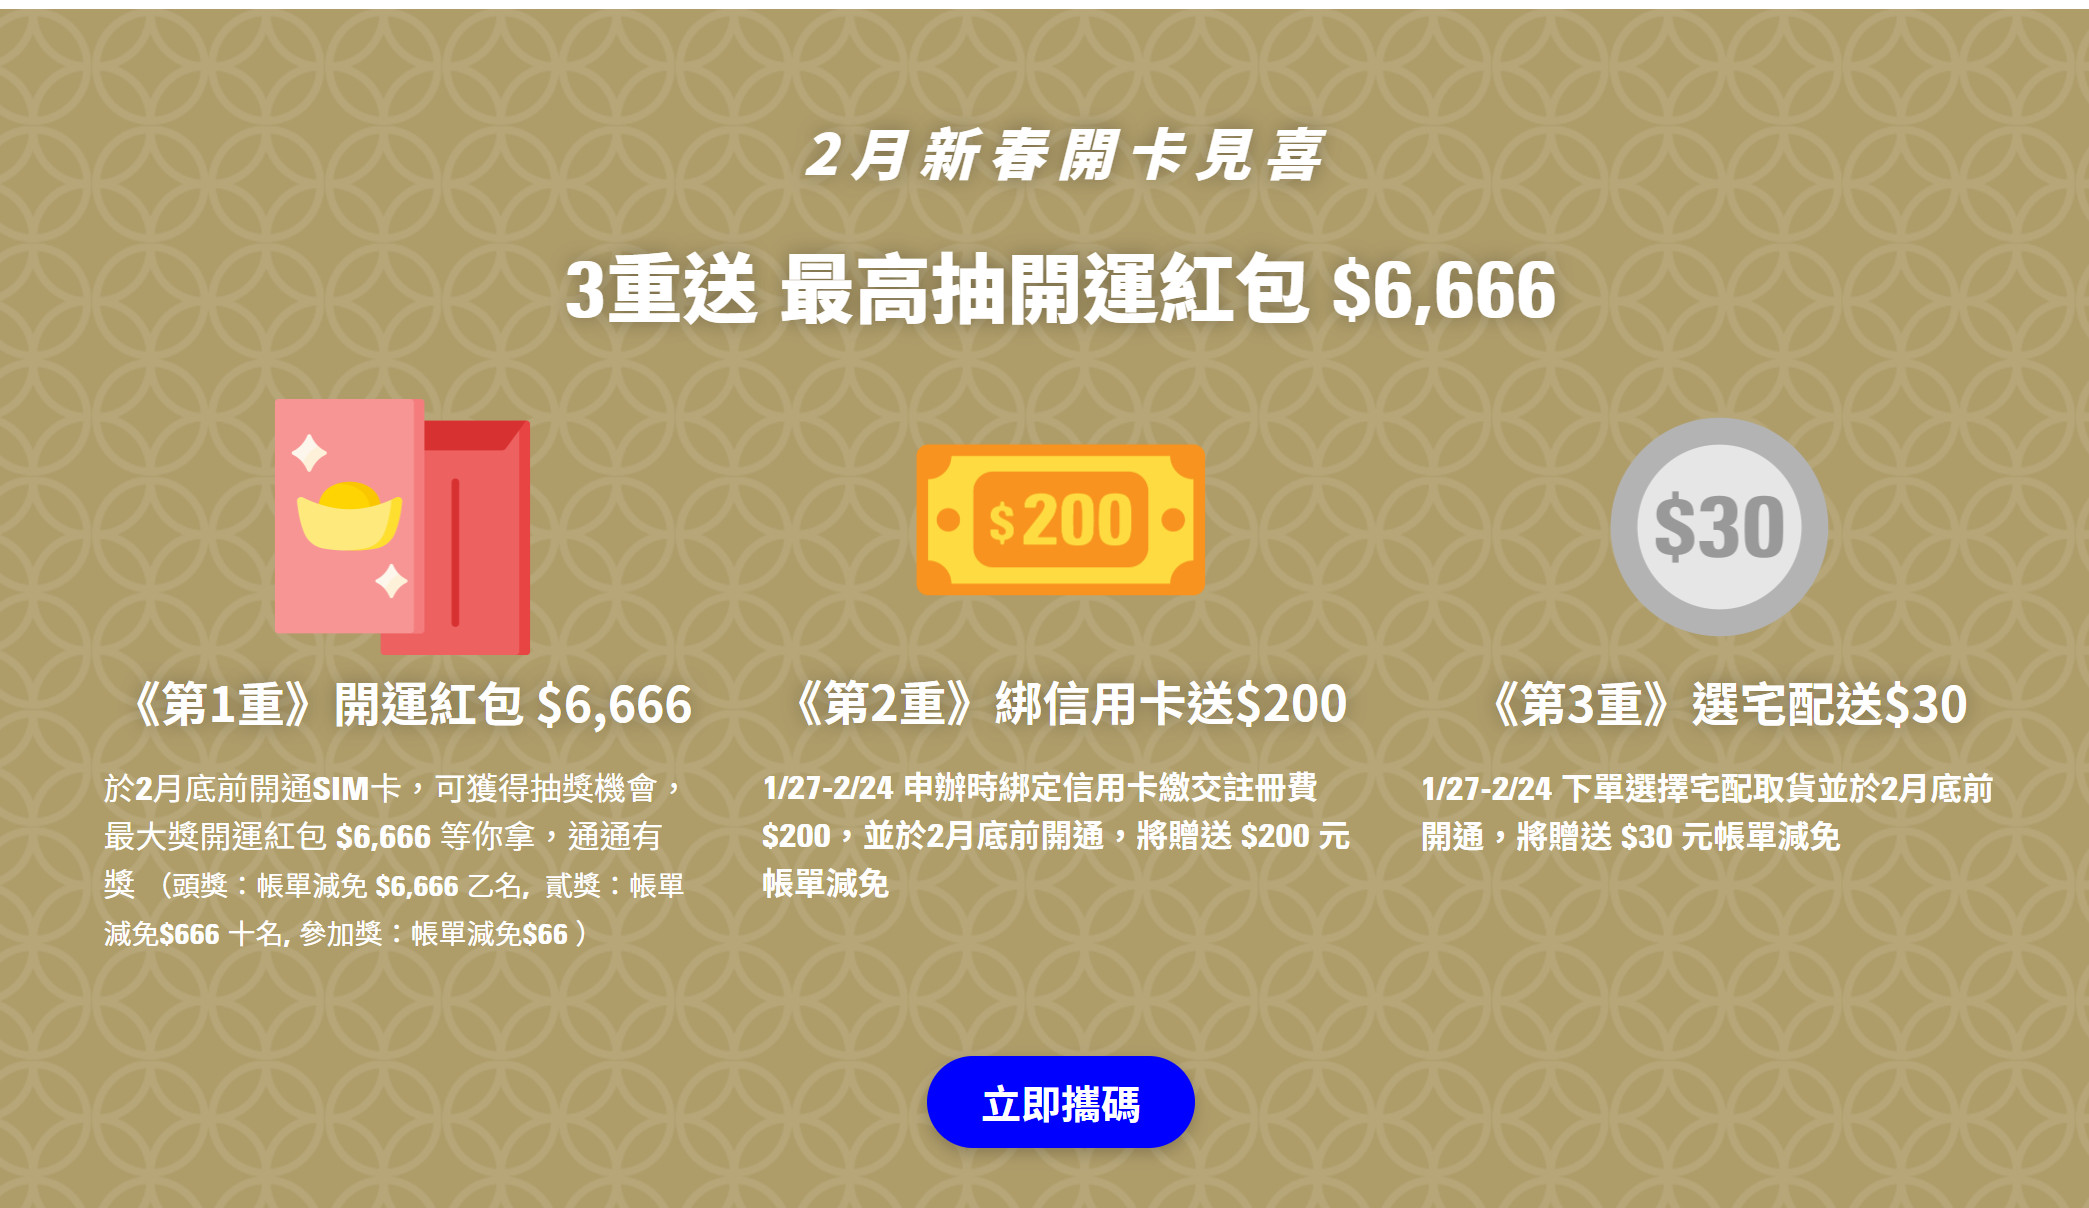 【無框行動】新春專案，中華電信大4G網路吃到飽466元，低流量只要166元!超適合搭配台灣之星雙11專案。 - 無框行動評價 - 敗家達人推薦